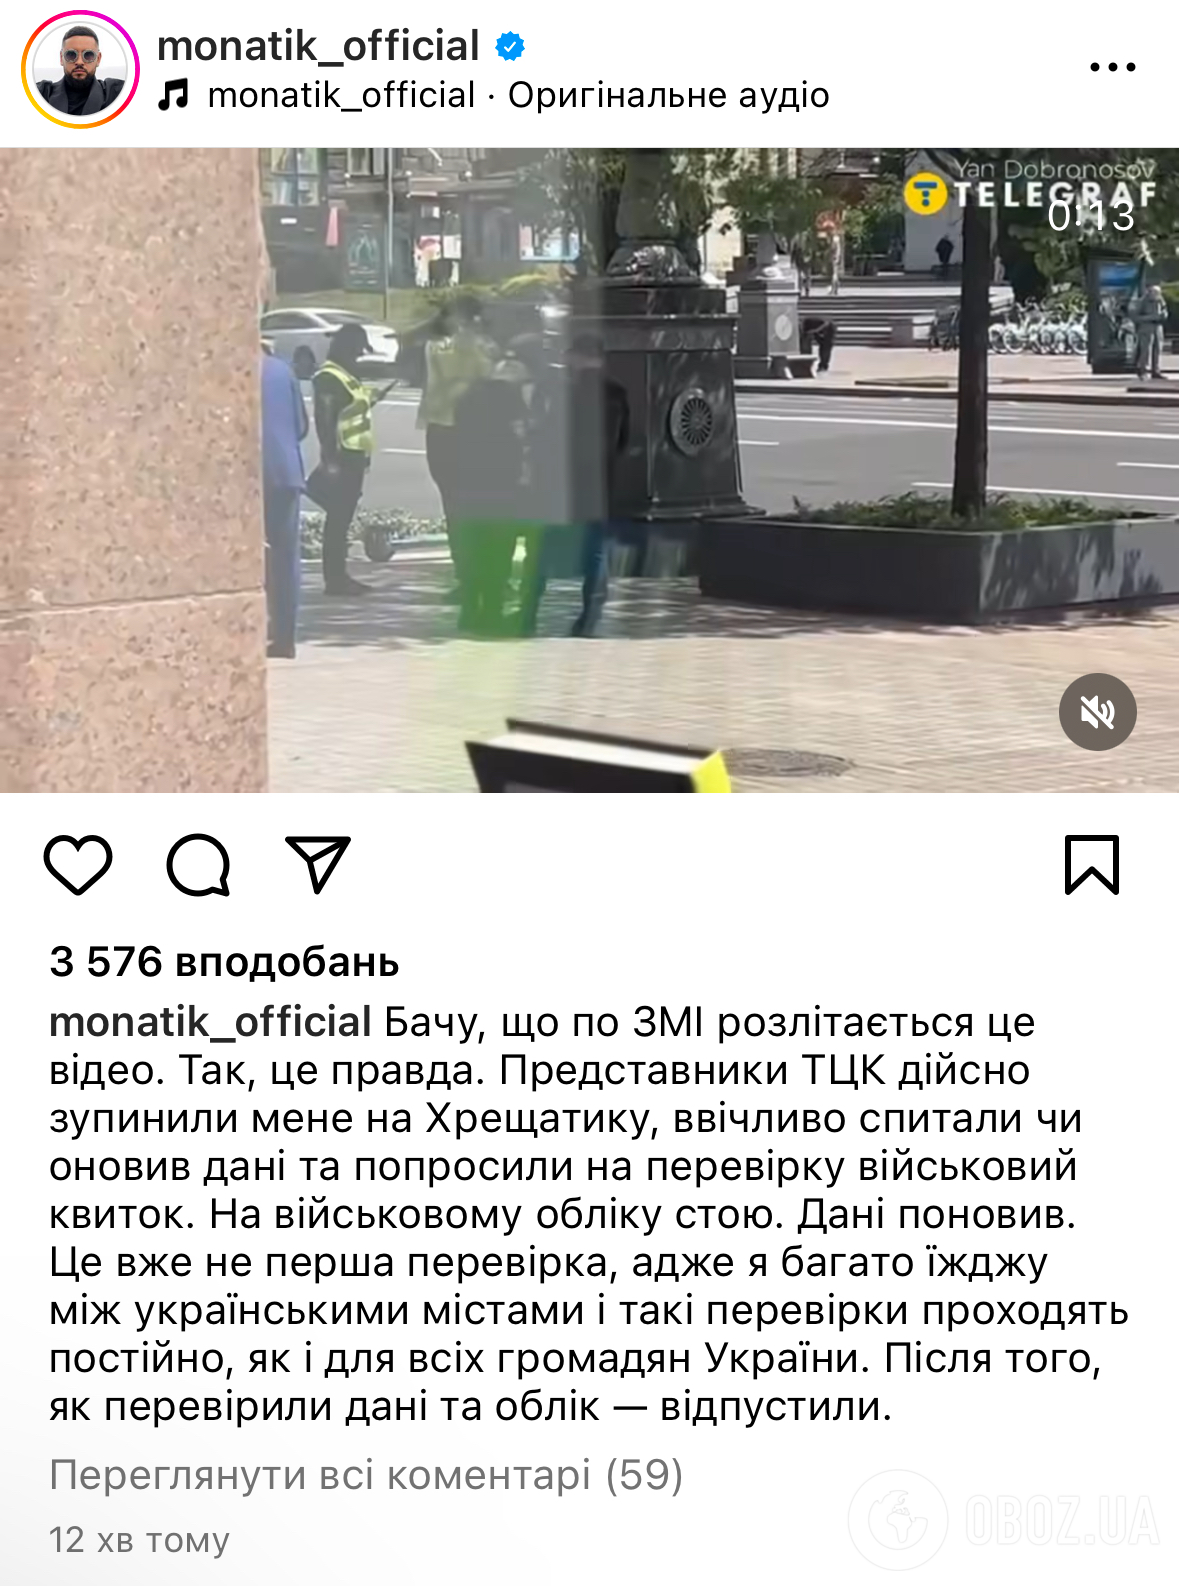 Працівники ТЦК зупинили Монатіка в центрі Києва: співак виступив із заявою. Відео